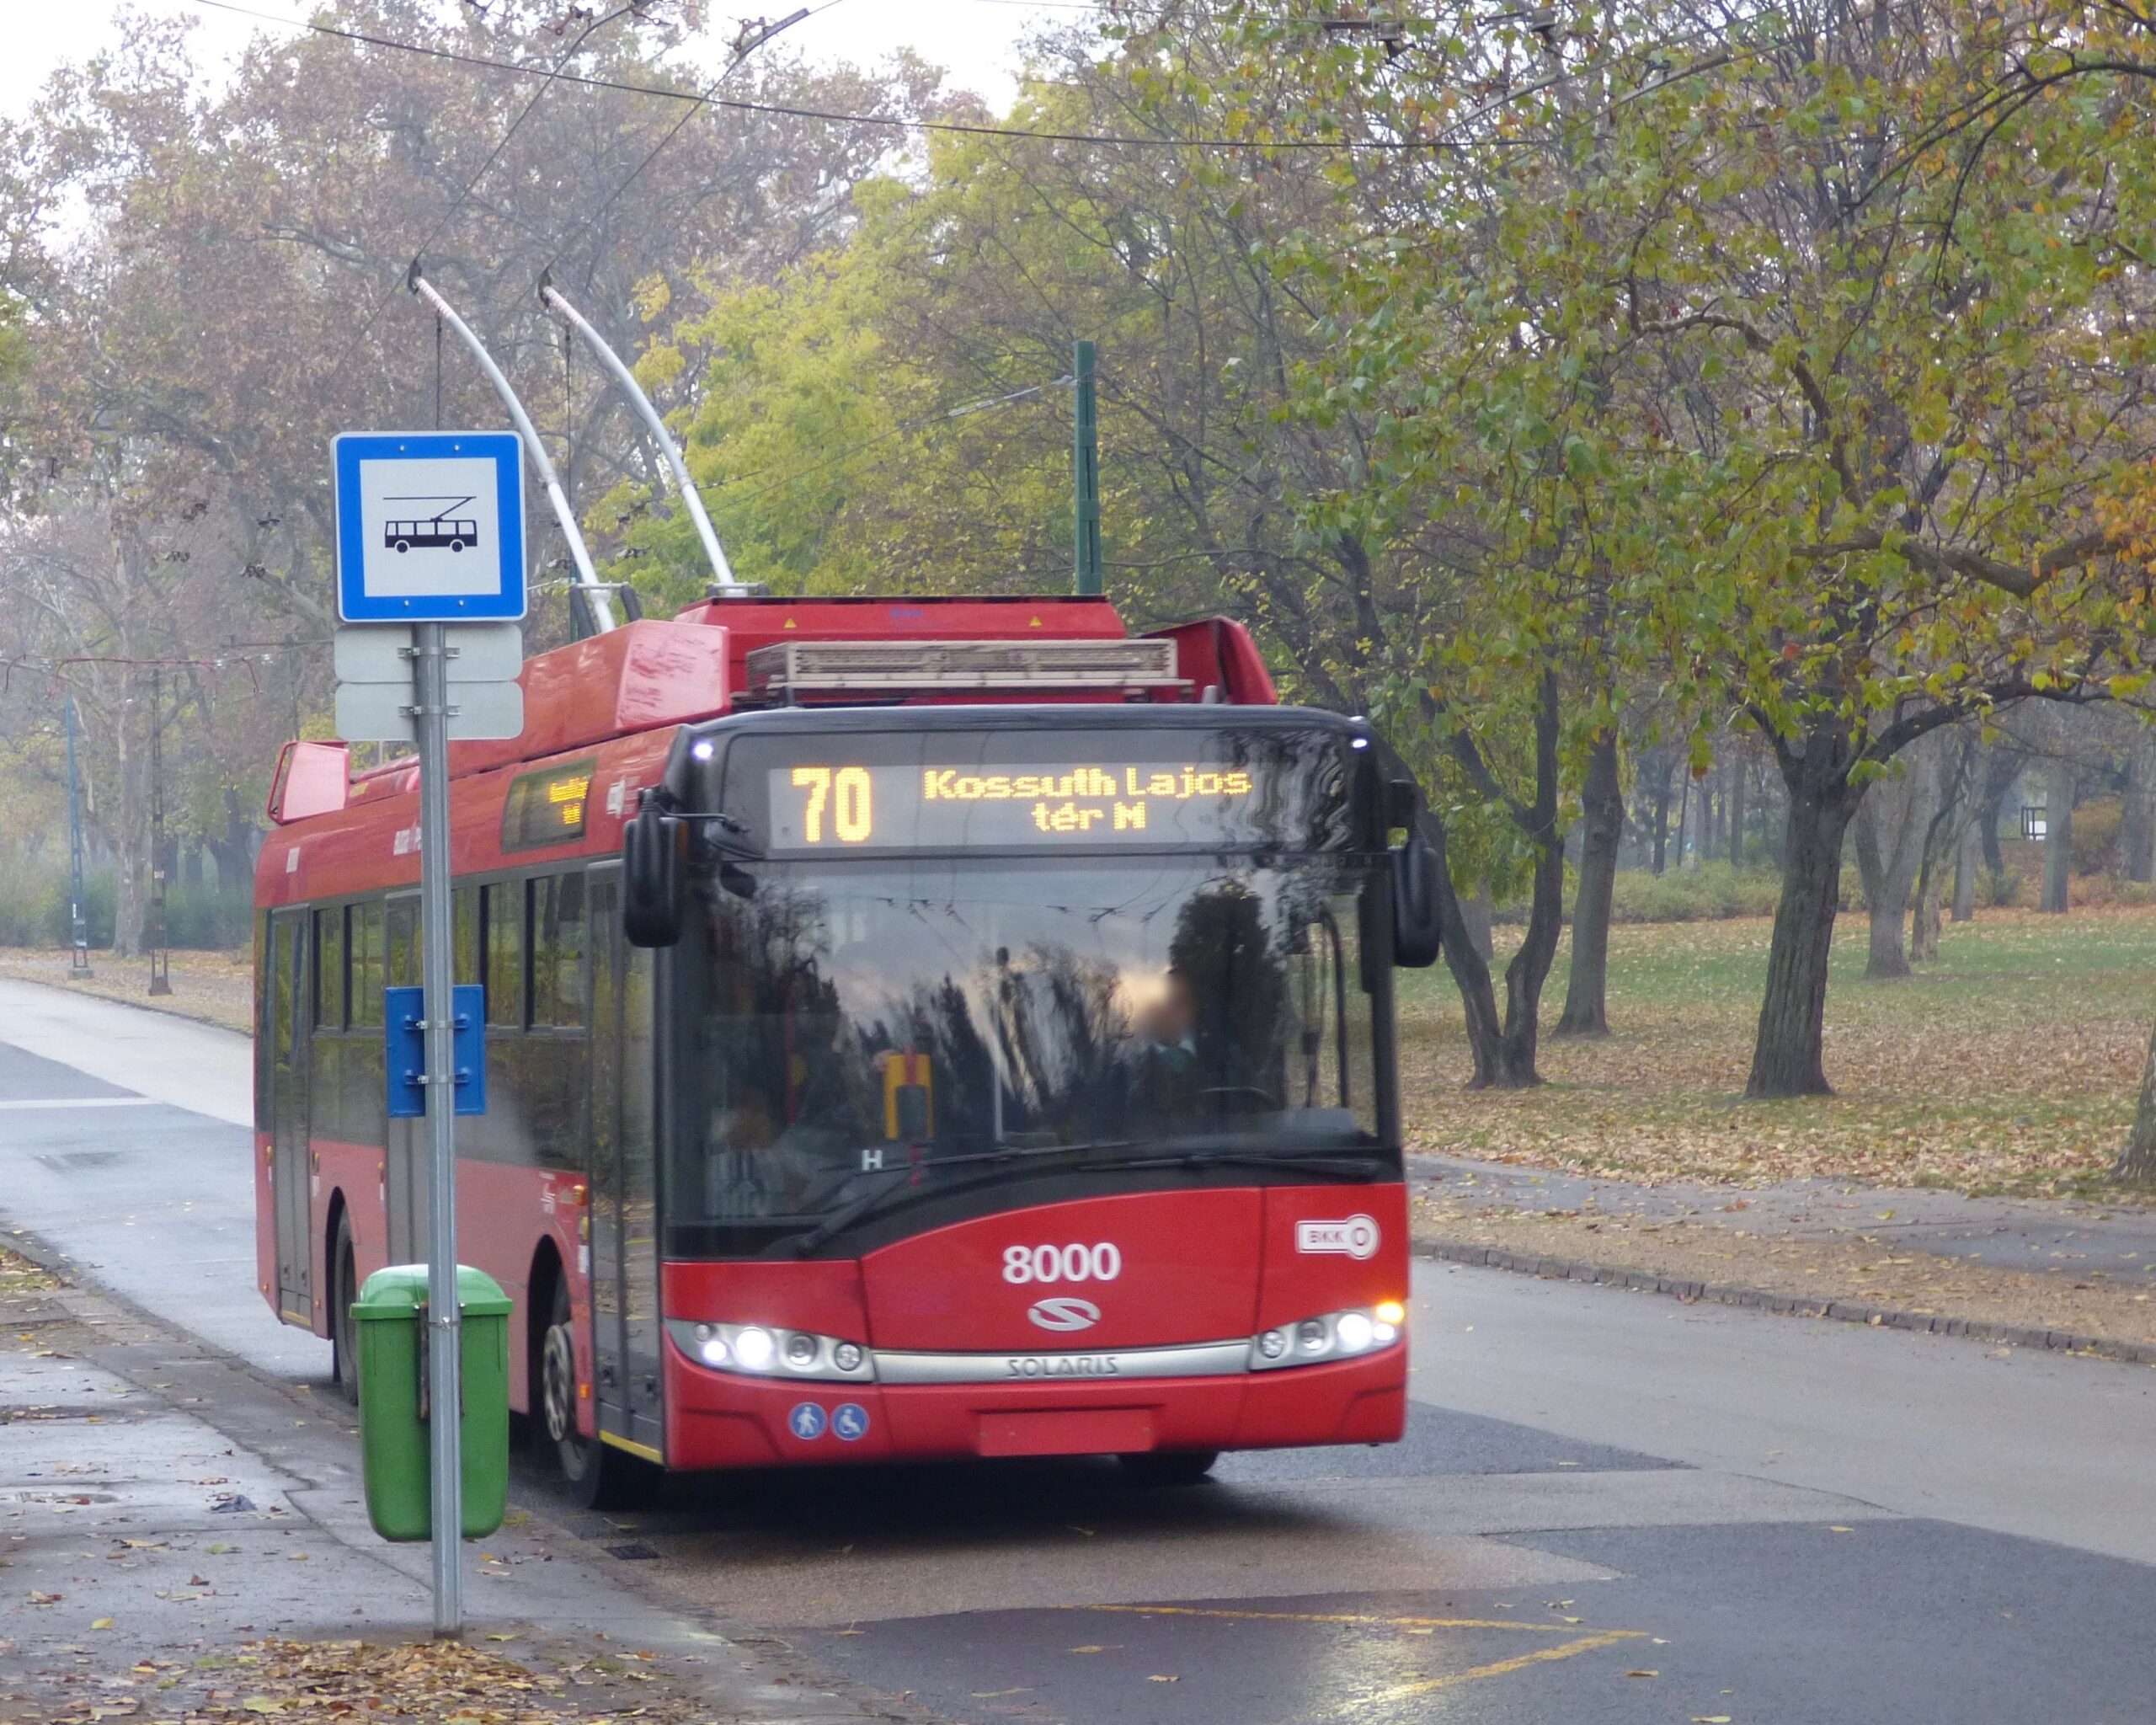 Modena: in arrivo 8 nuovi filobus full electric per la rete urbana